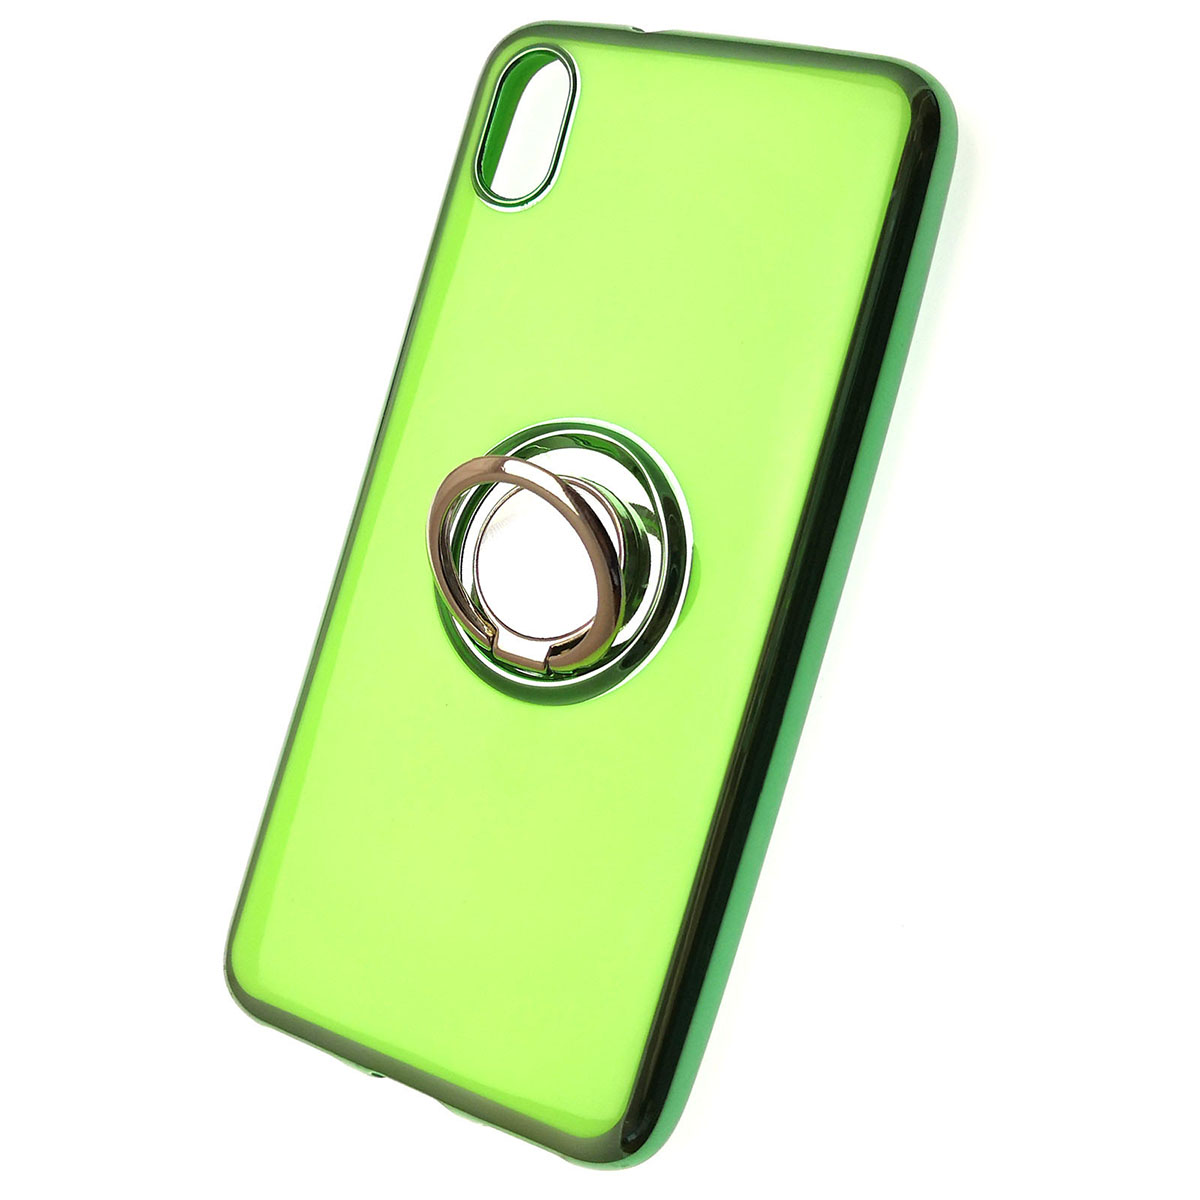 Чехол накладка для XIAOMI Redmi 7A, силикон, кольцом держатель, цвет зеленый.